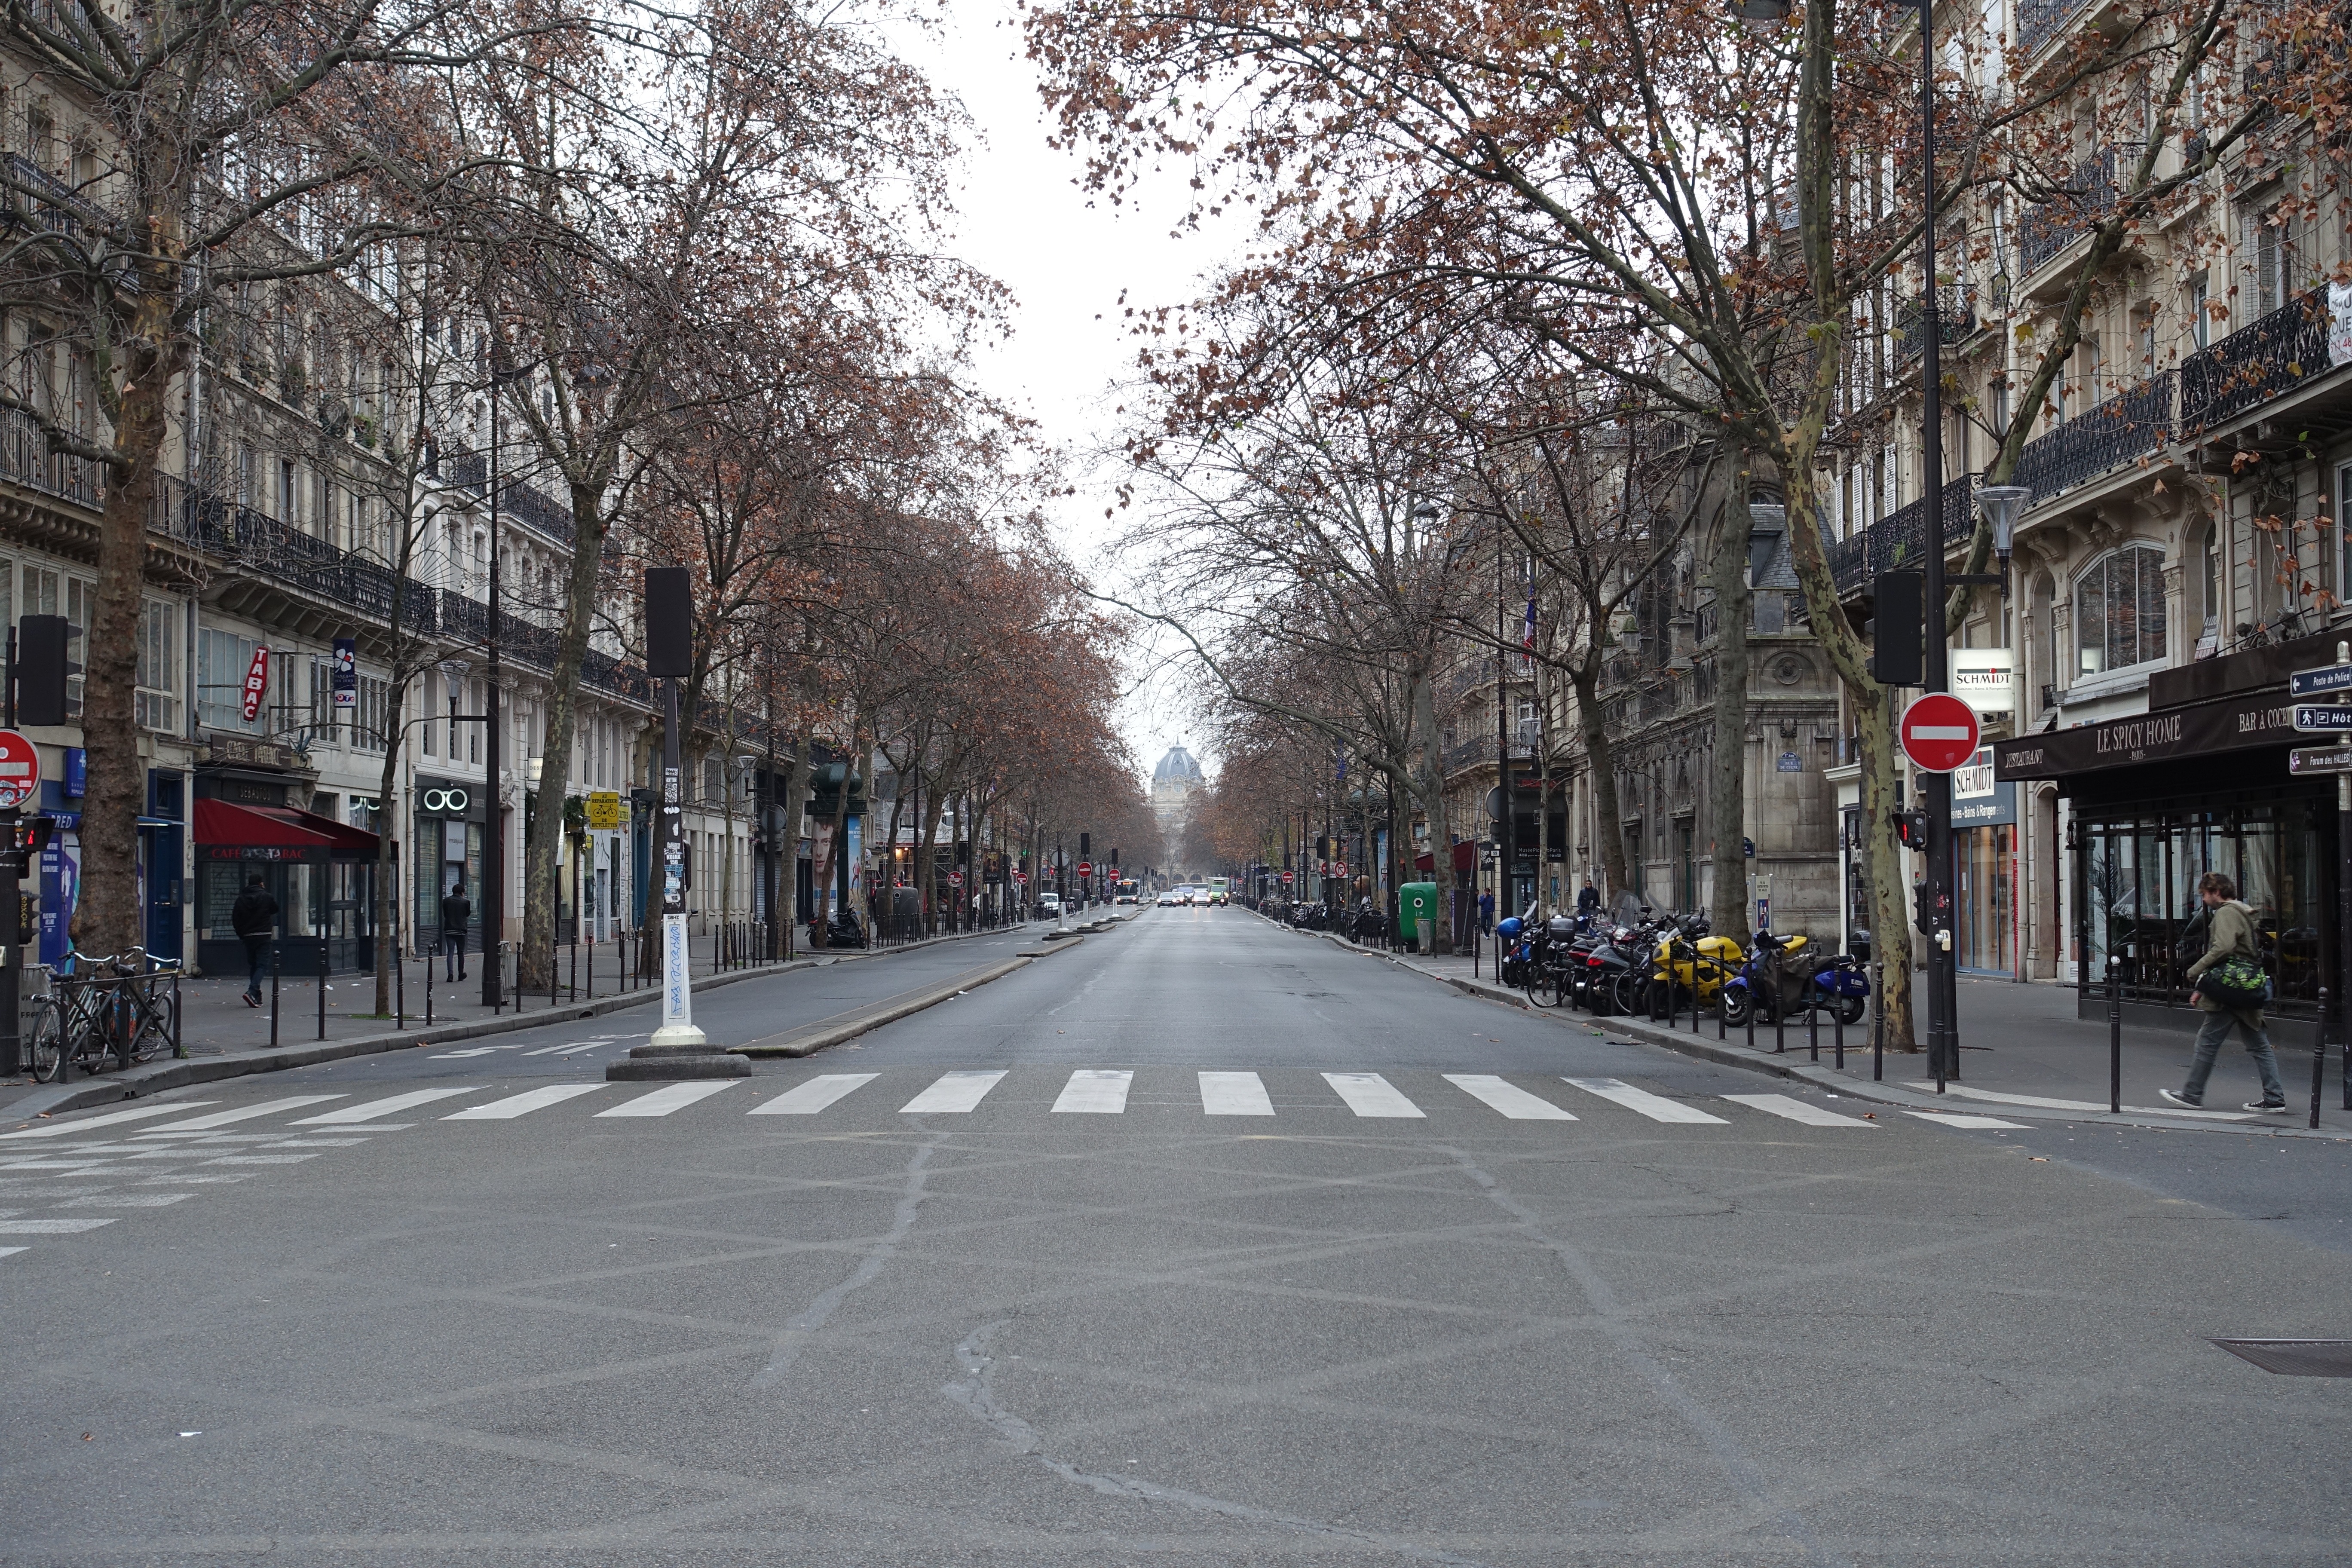 File:Empty street, Boulevard de Sébastopol, Paris 1 January 2016.jpg ...